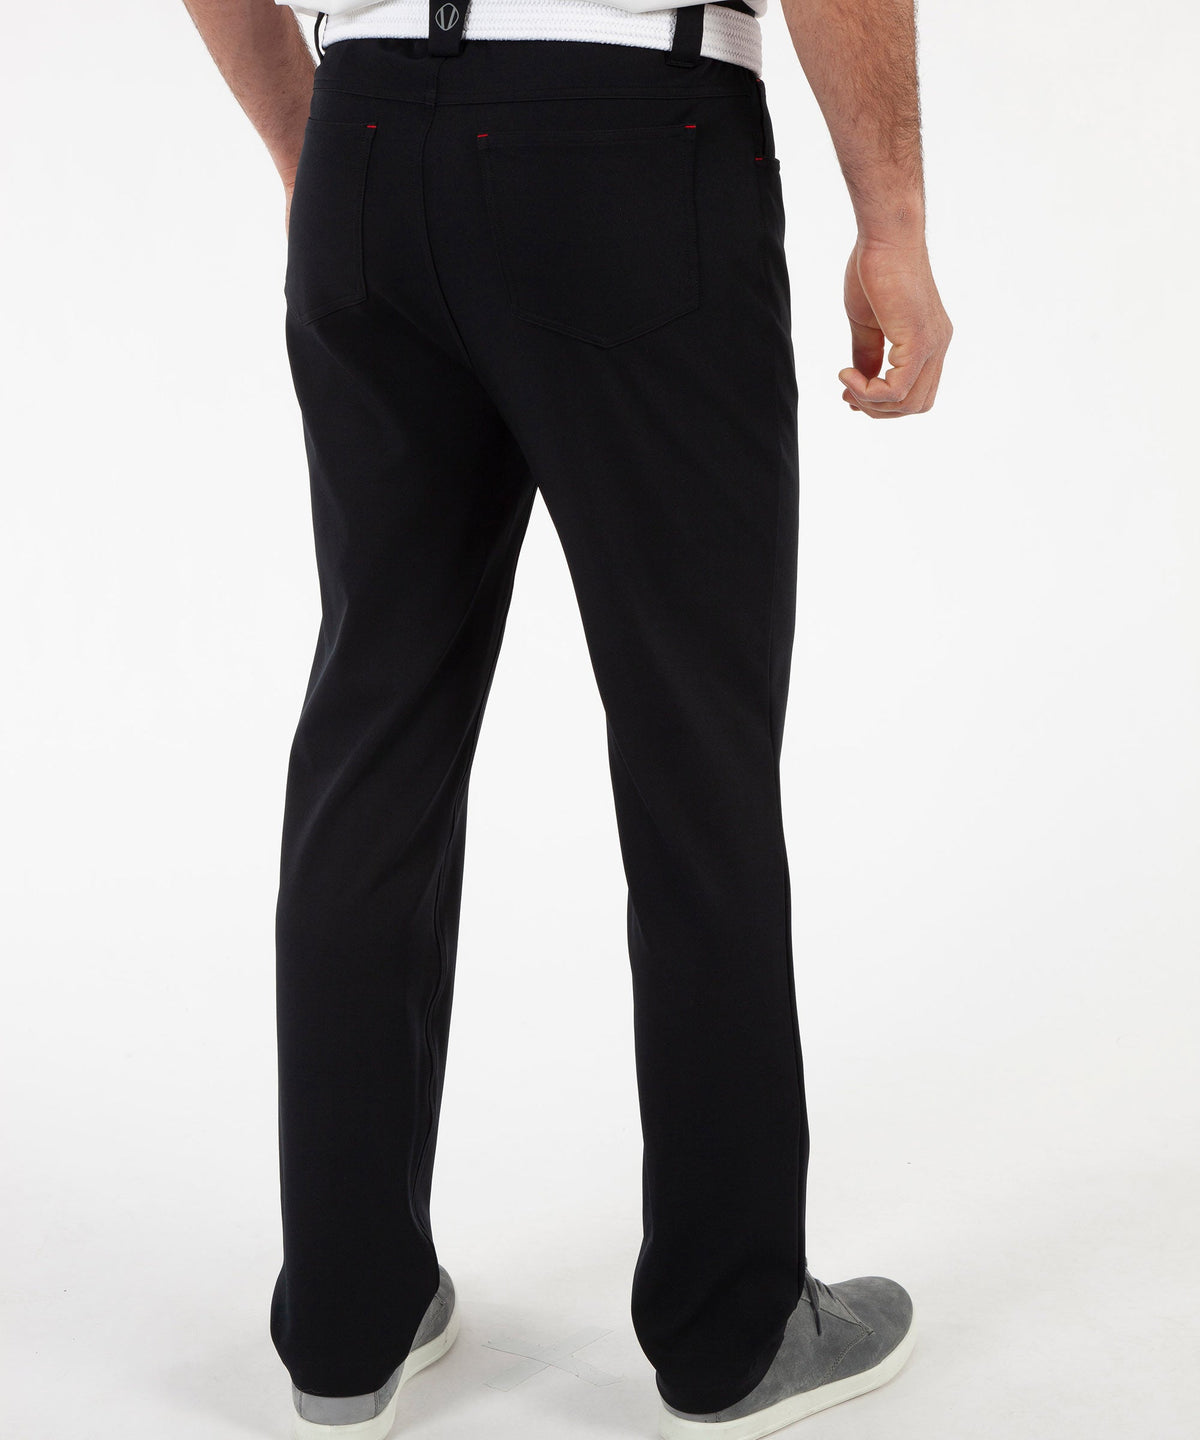 Pantalon extensible à 5 poches Brady Coollite pour homme